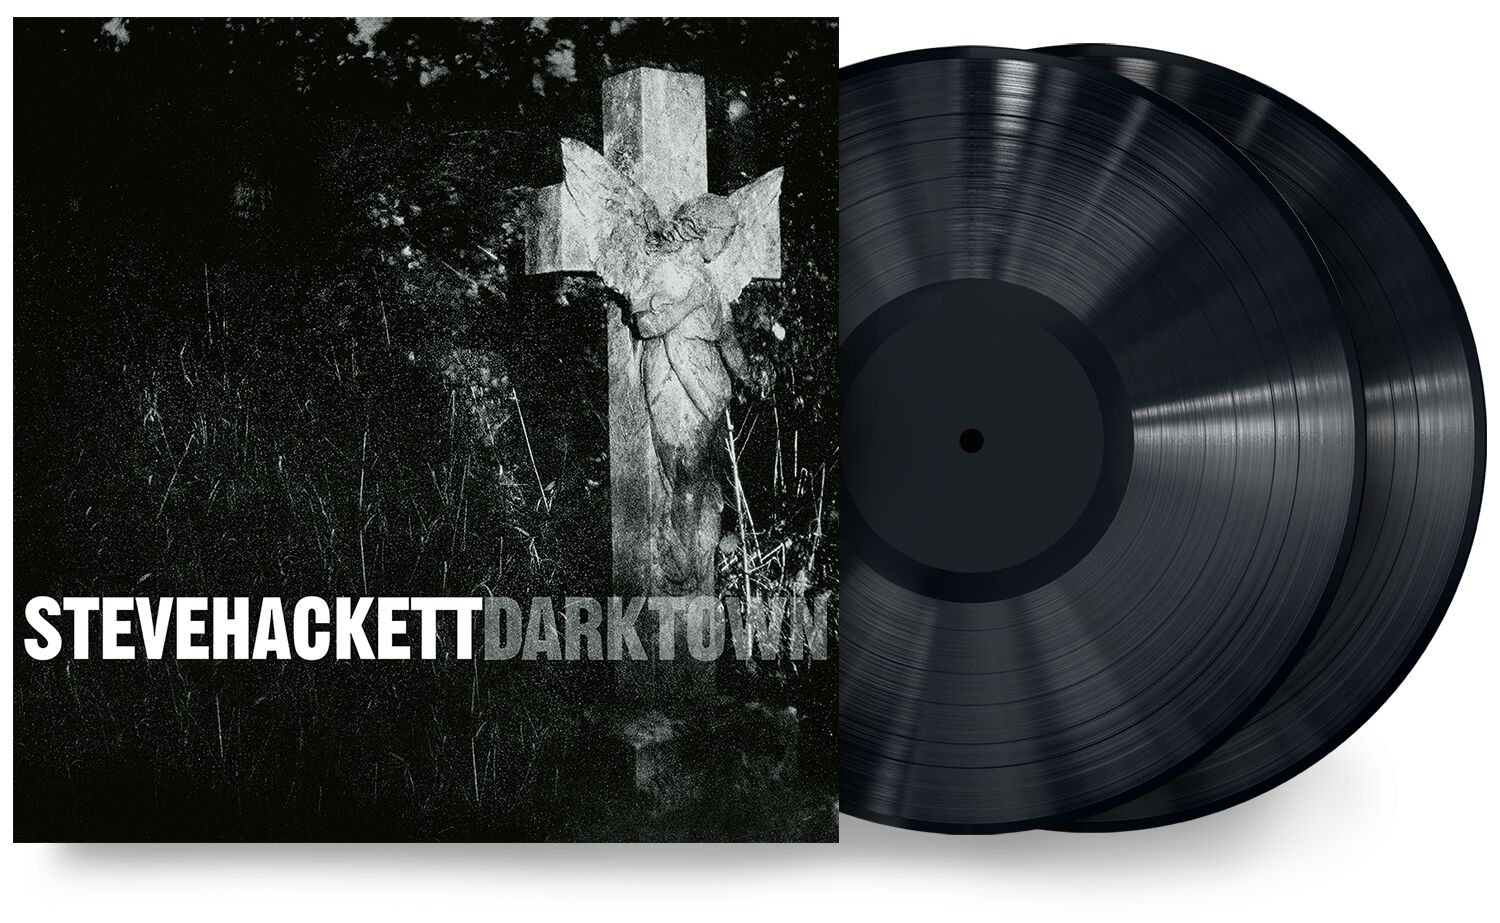 HACKETT STEVE - Darktown (Gatefold 180gr 2LP reissue)